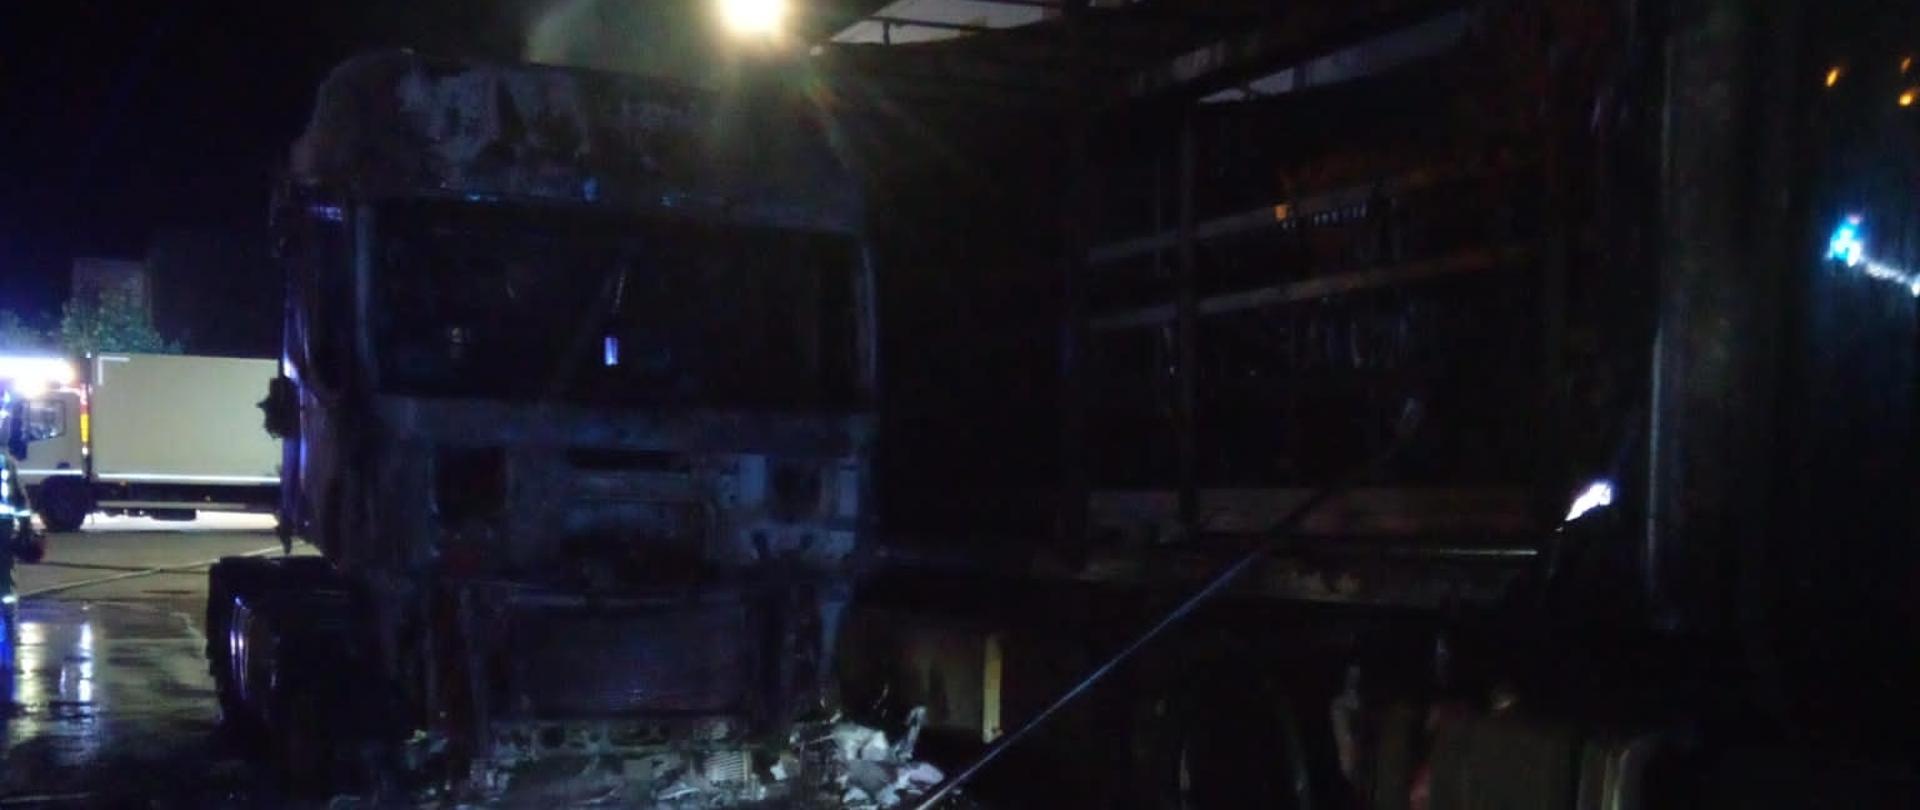 Zdjęcie przedstawia dwa spalone ciągniki siodłowe z naczepami. Po lewej widać spaloną naczepę a w głębi przód drugiego zniszczonego przez ogień pojazdu.